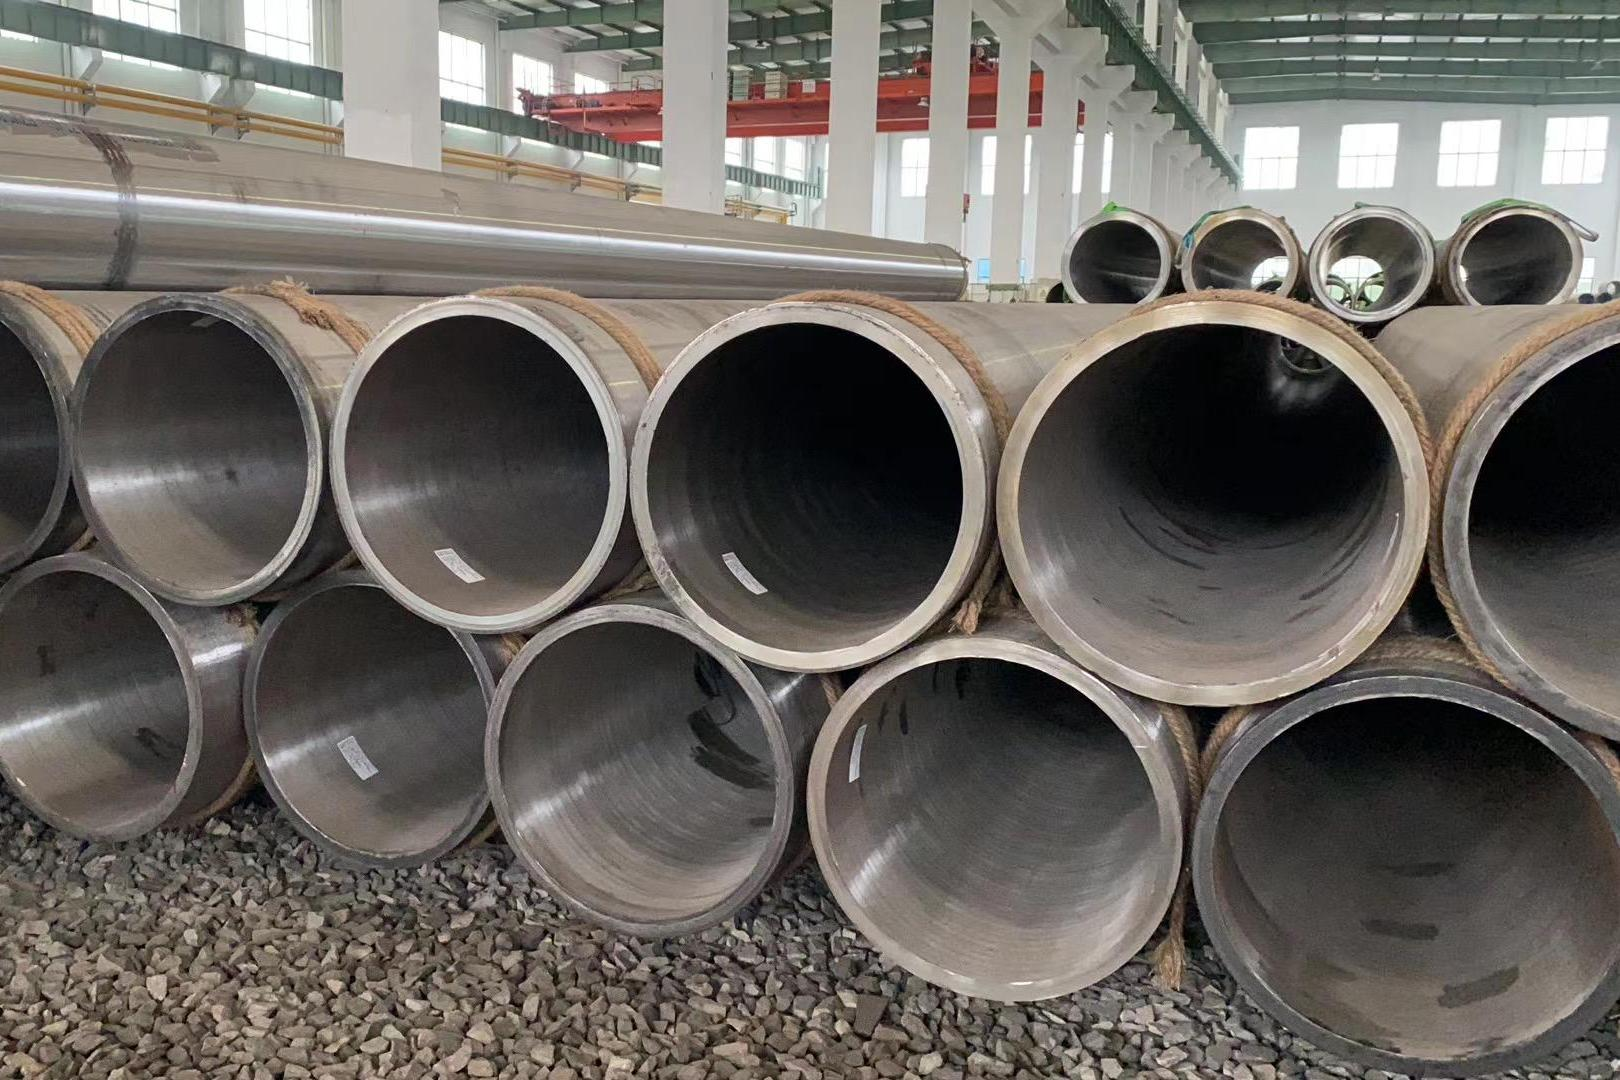 Tianjin Sanon Steel Pipe Co., Ltd. dê îsal tenê hilberên sereke hilberîne.